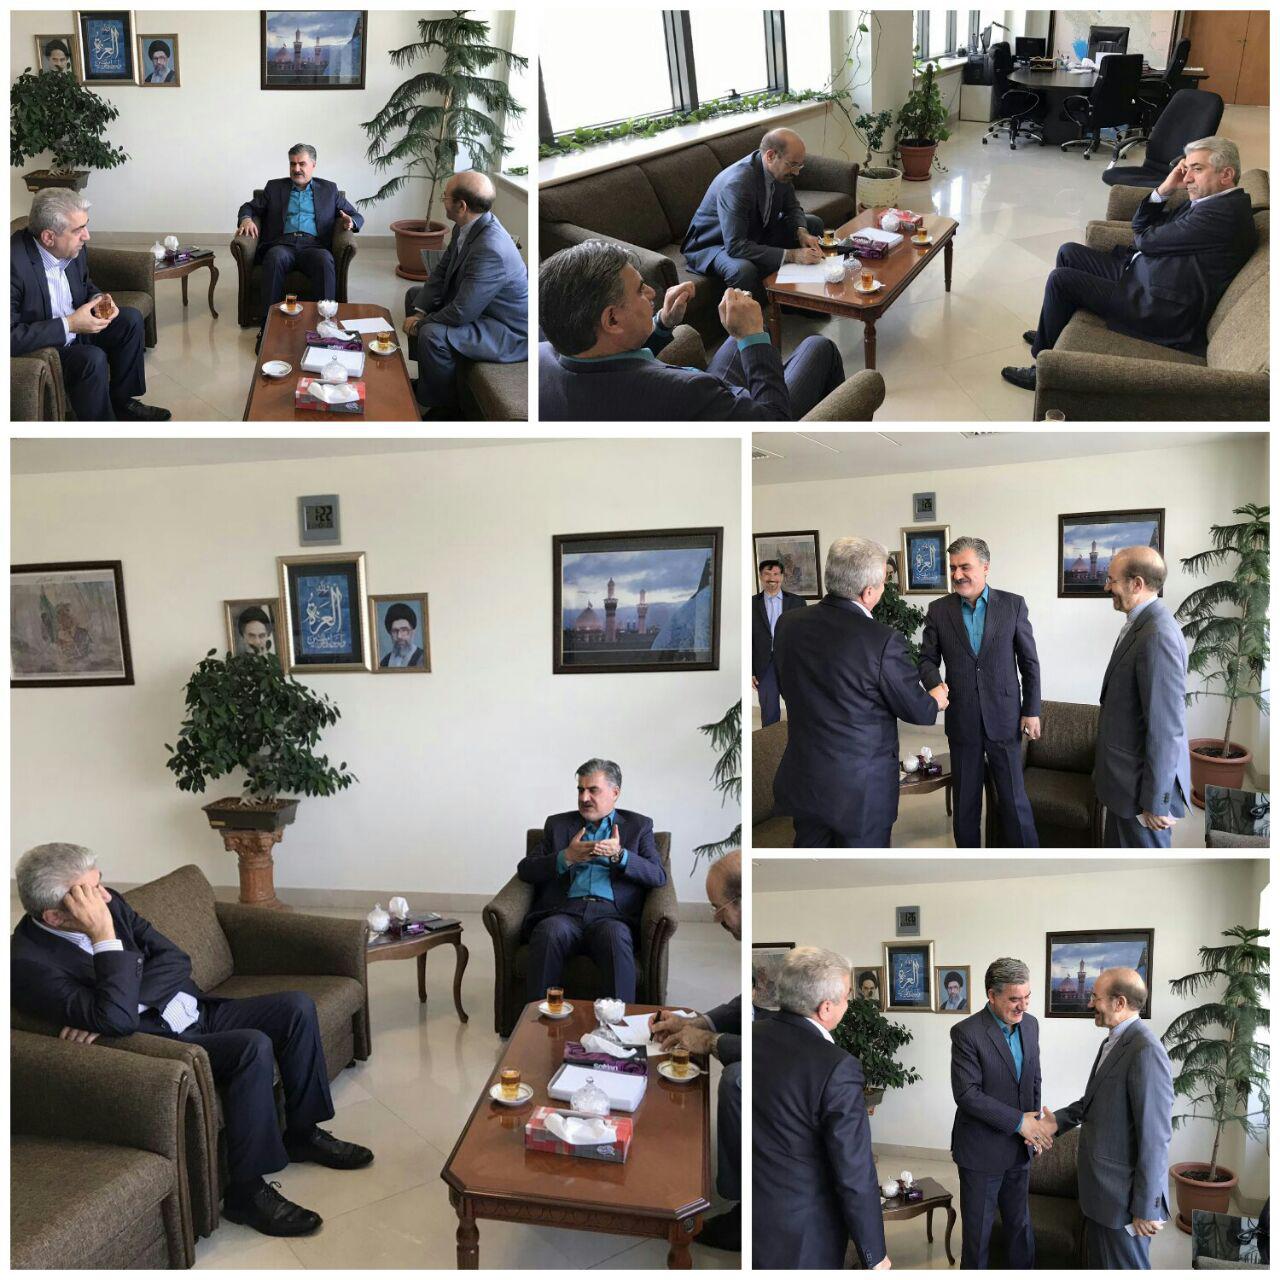  جلسه دکتر عزیزی با مهندس محمودی سرپرست وزارت نیرو در رابطه با آب های زیرزمینی منطقه سرانی شیروان.